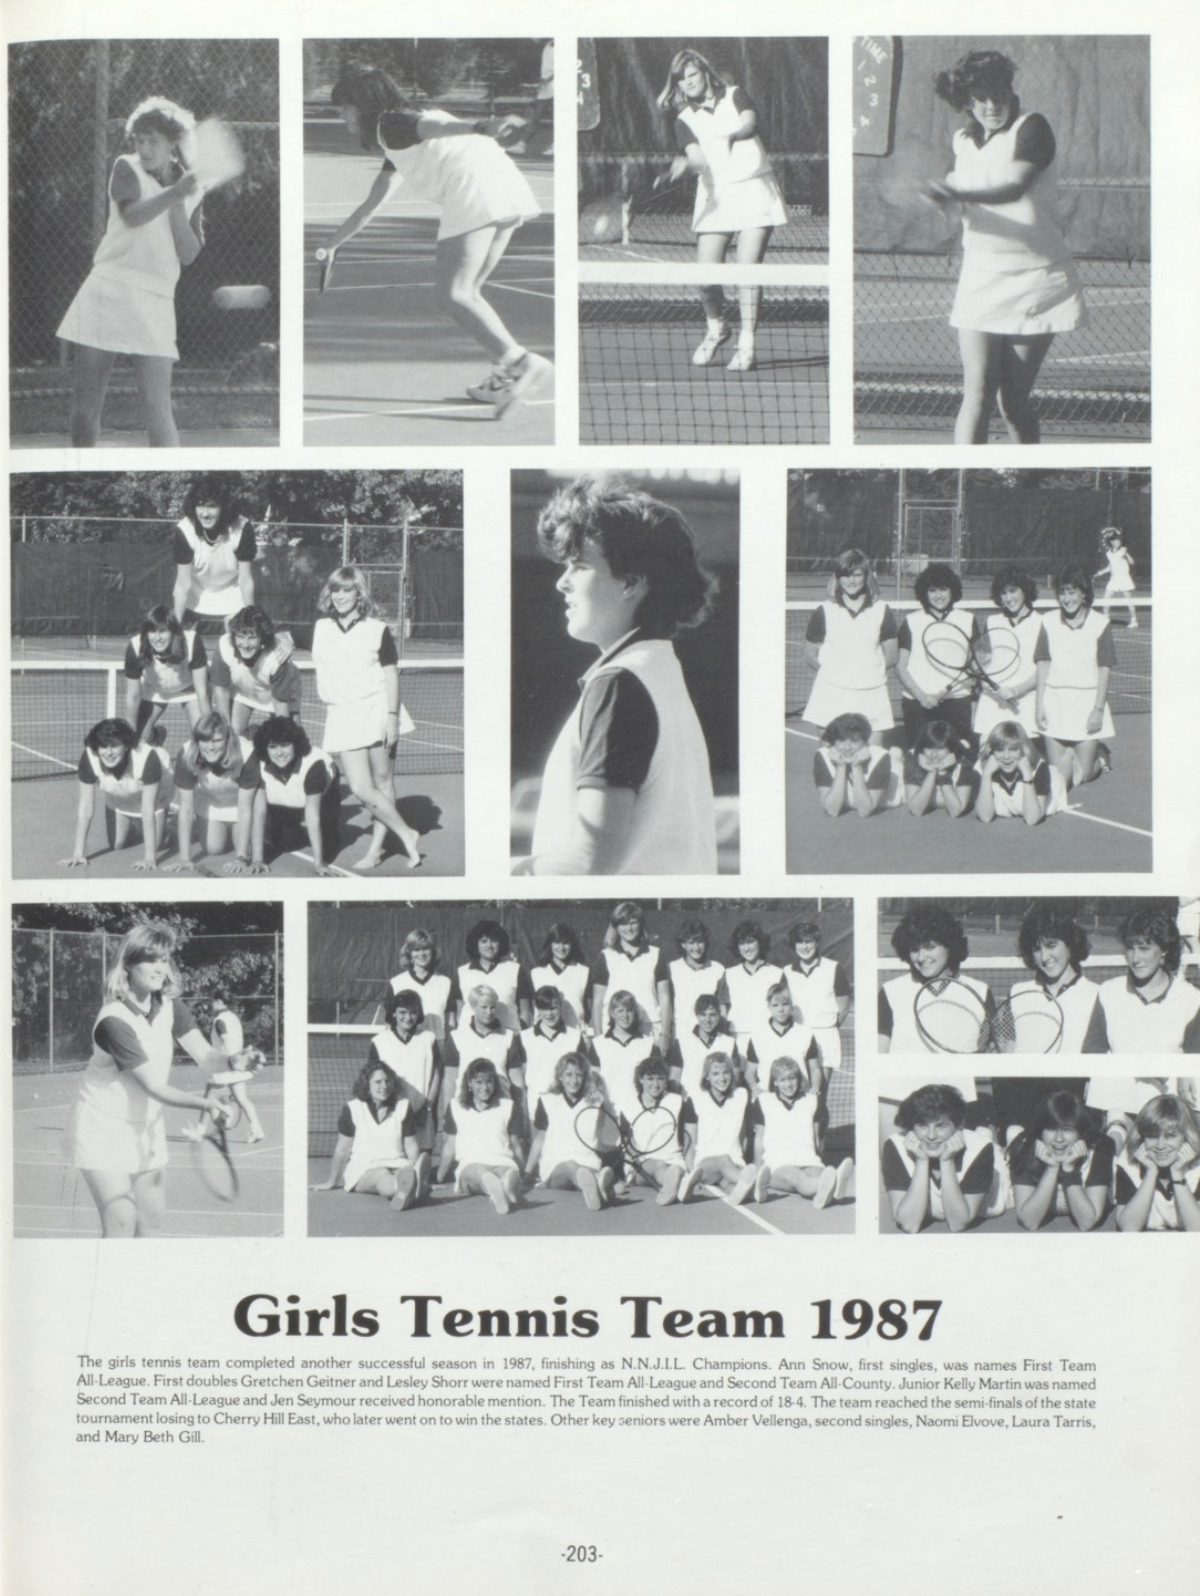 1987 Girls’ Tennis Team